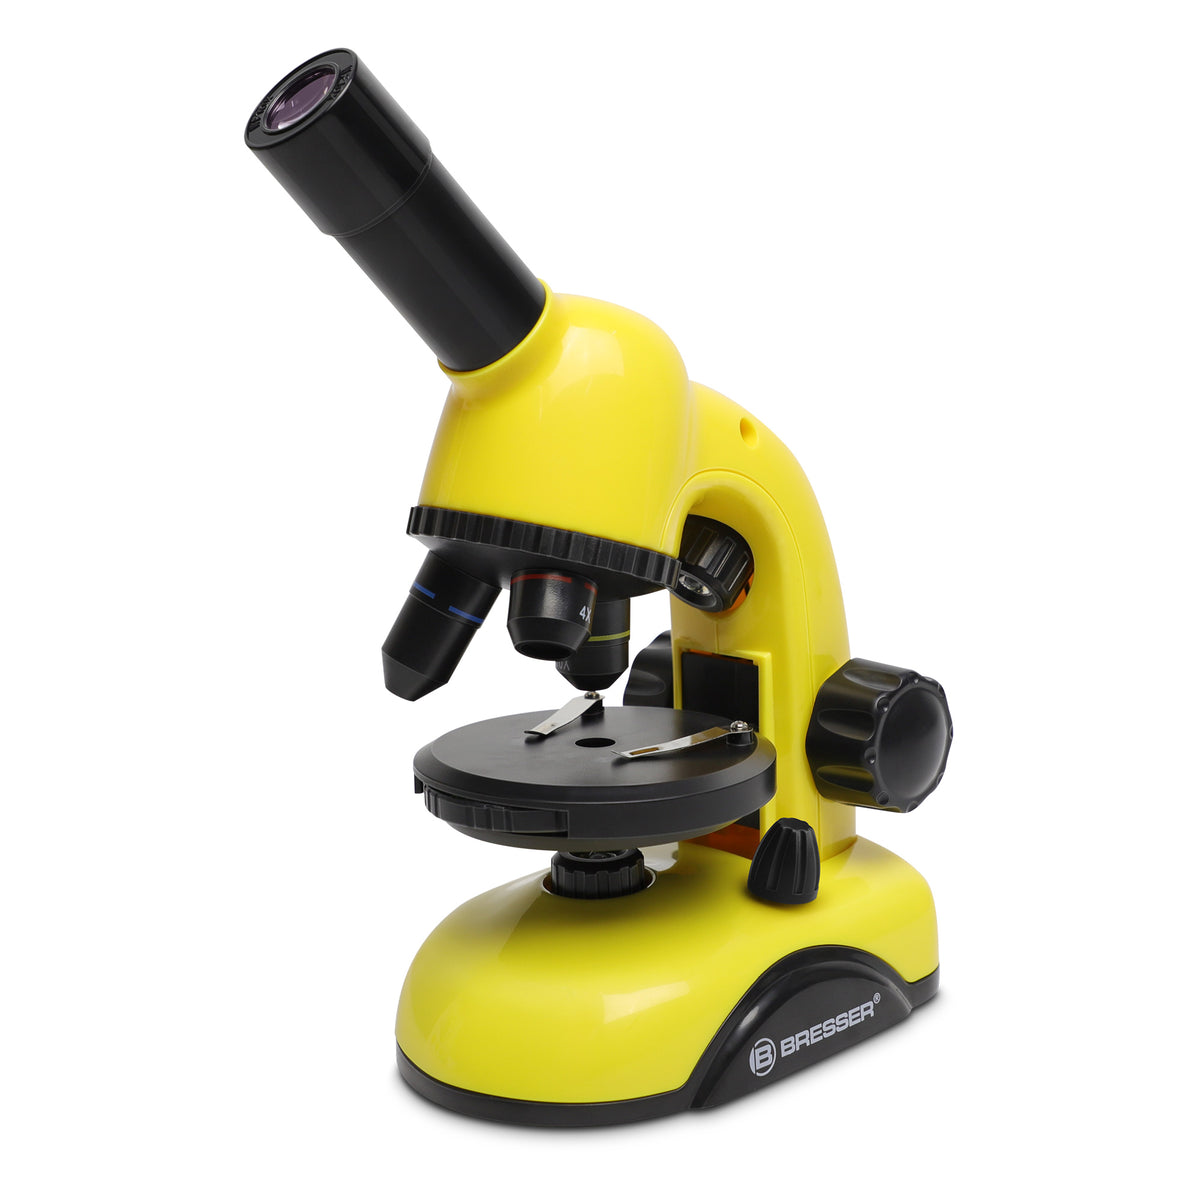 Bresser 40x-800x Microscope — Explore Scientific